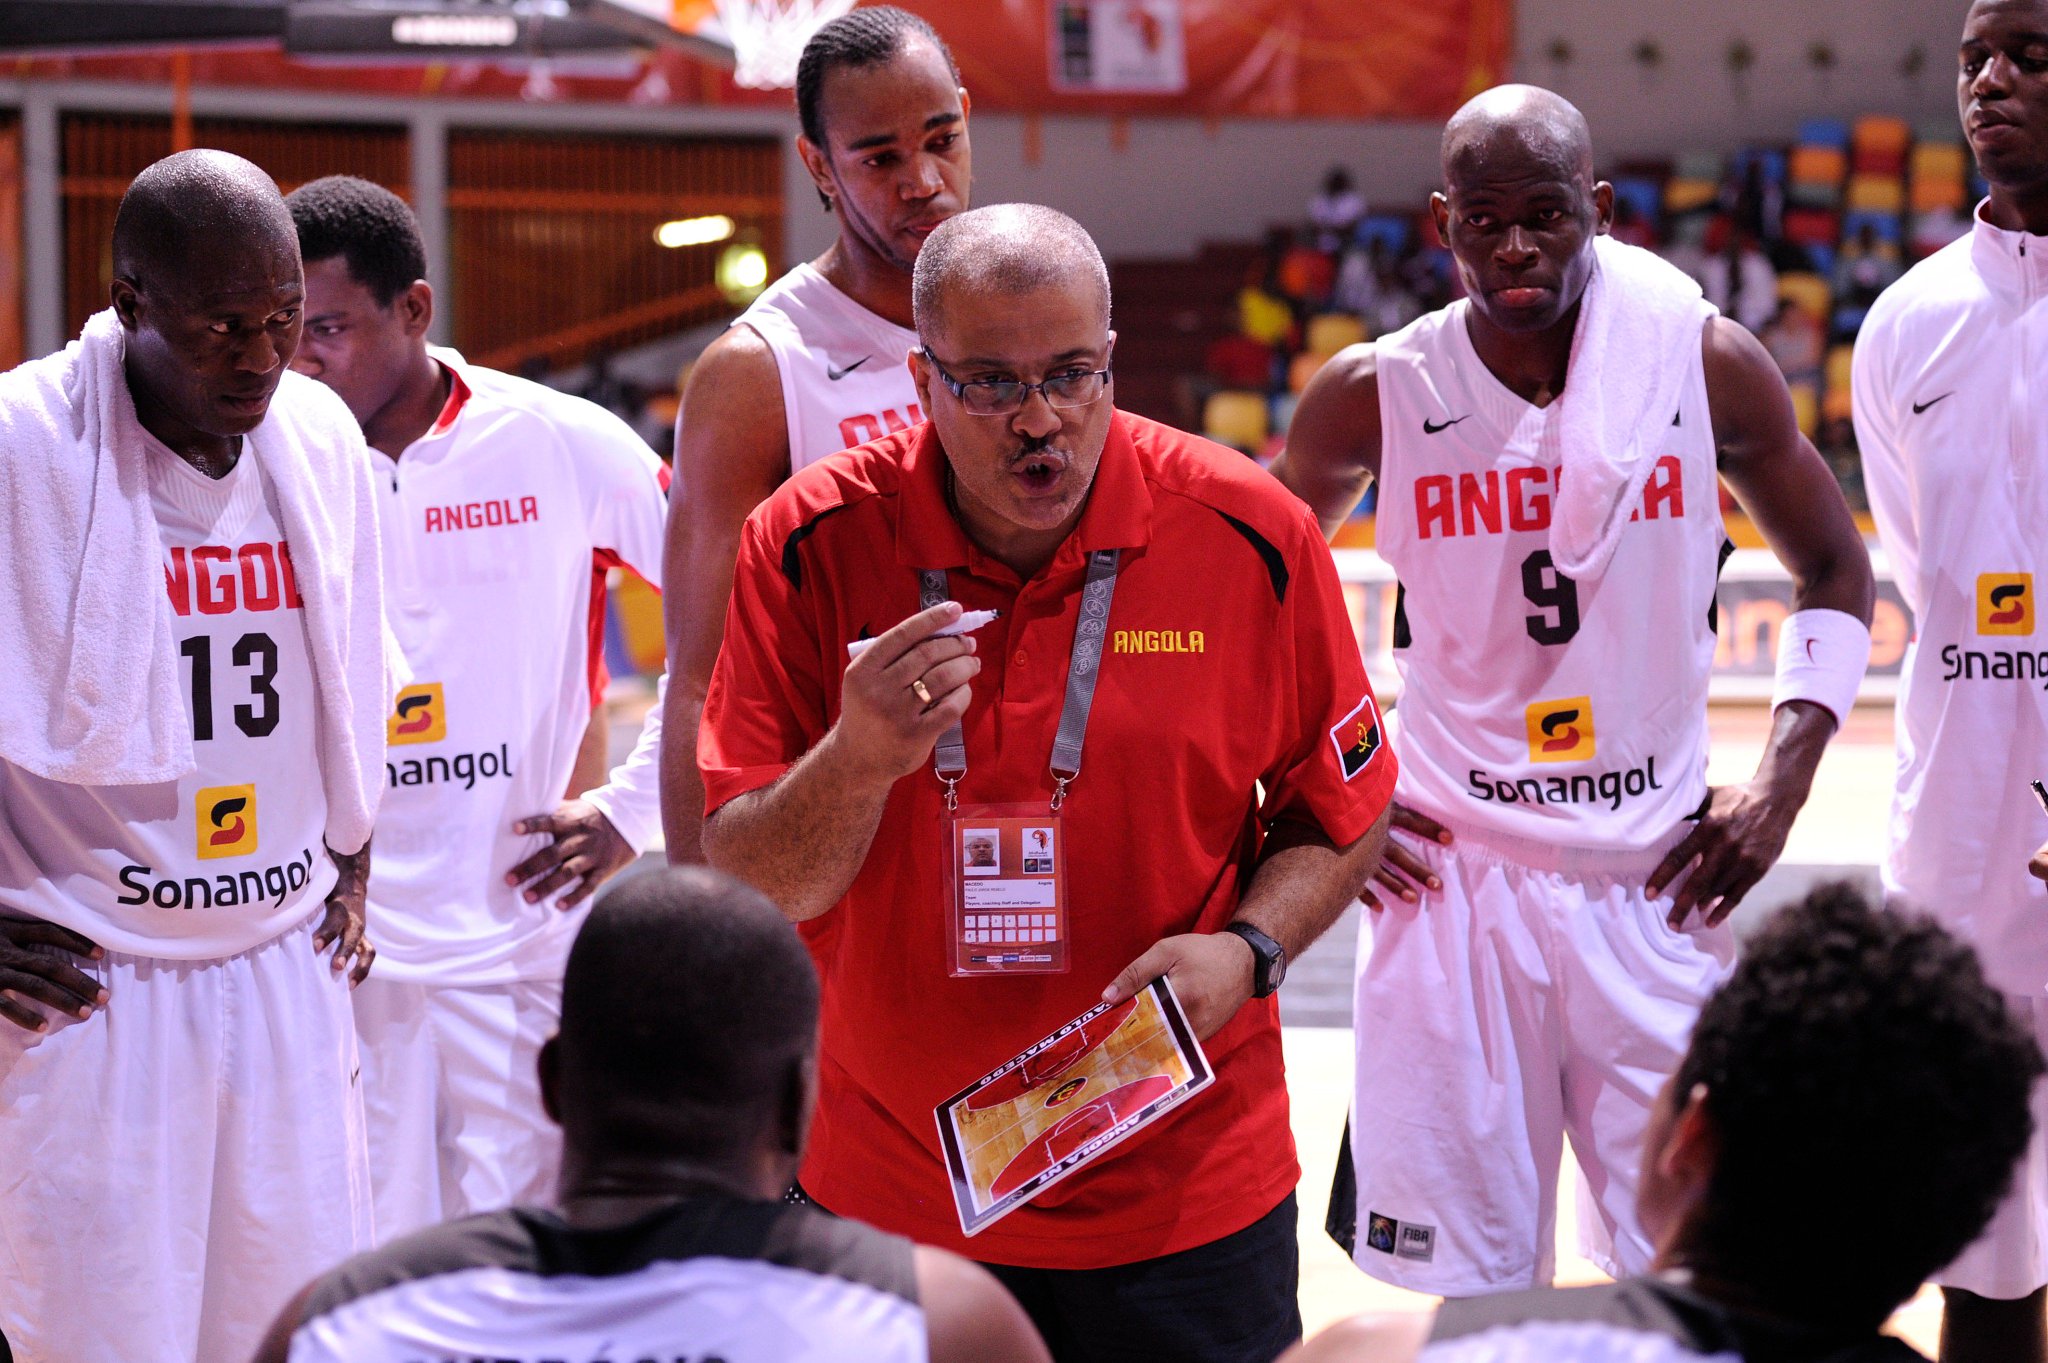 Angola: Selecção Nacional de basquetebol faz últimos acertos